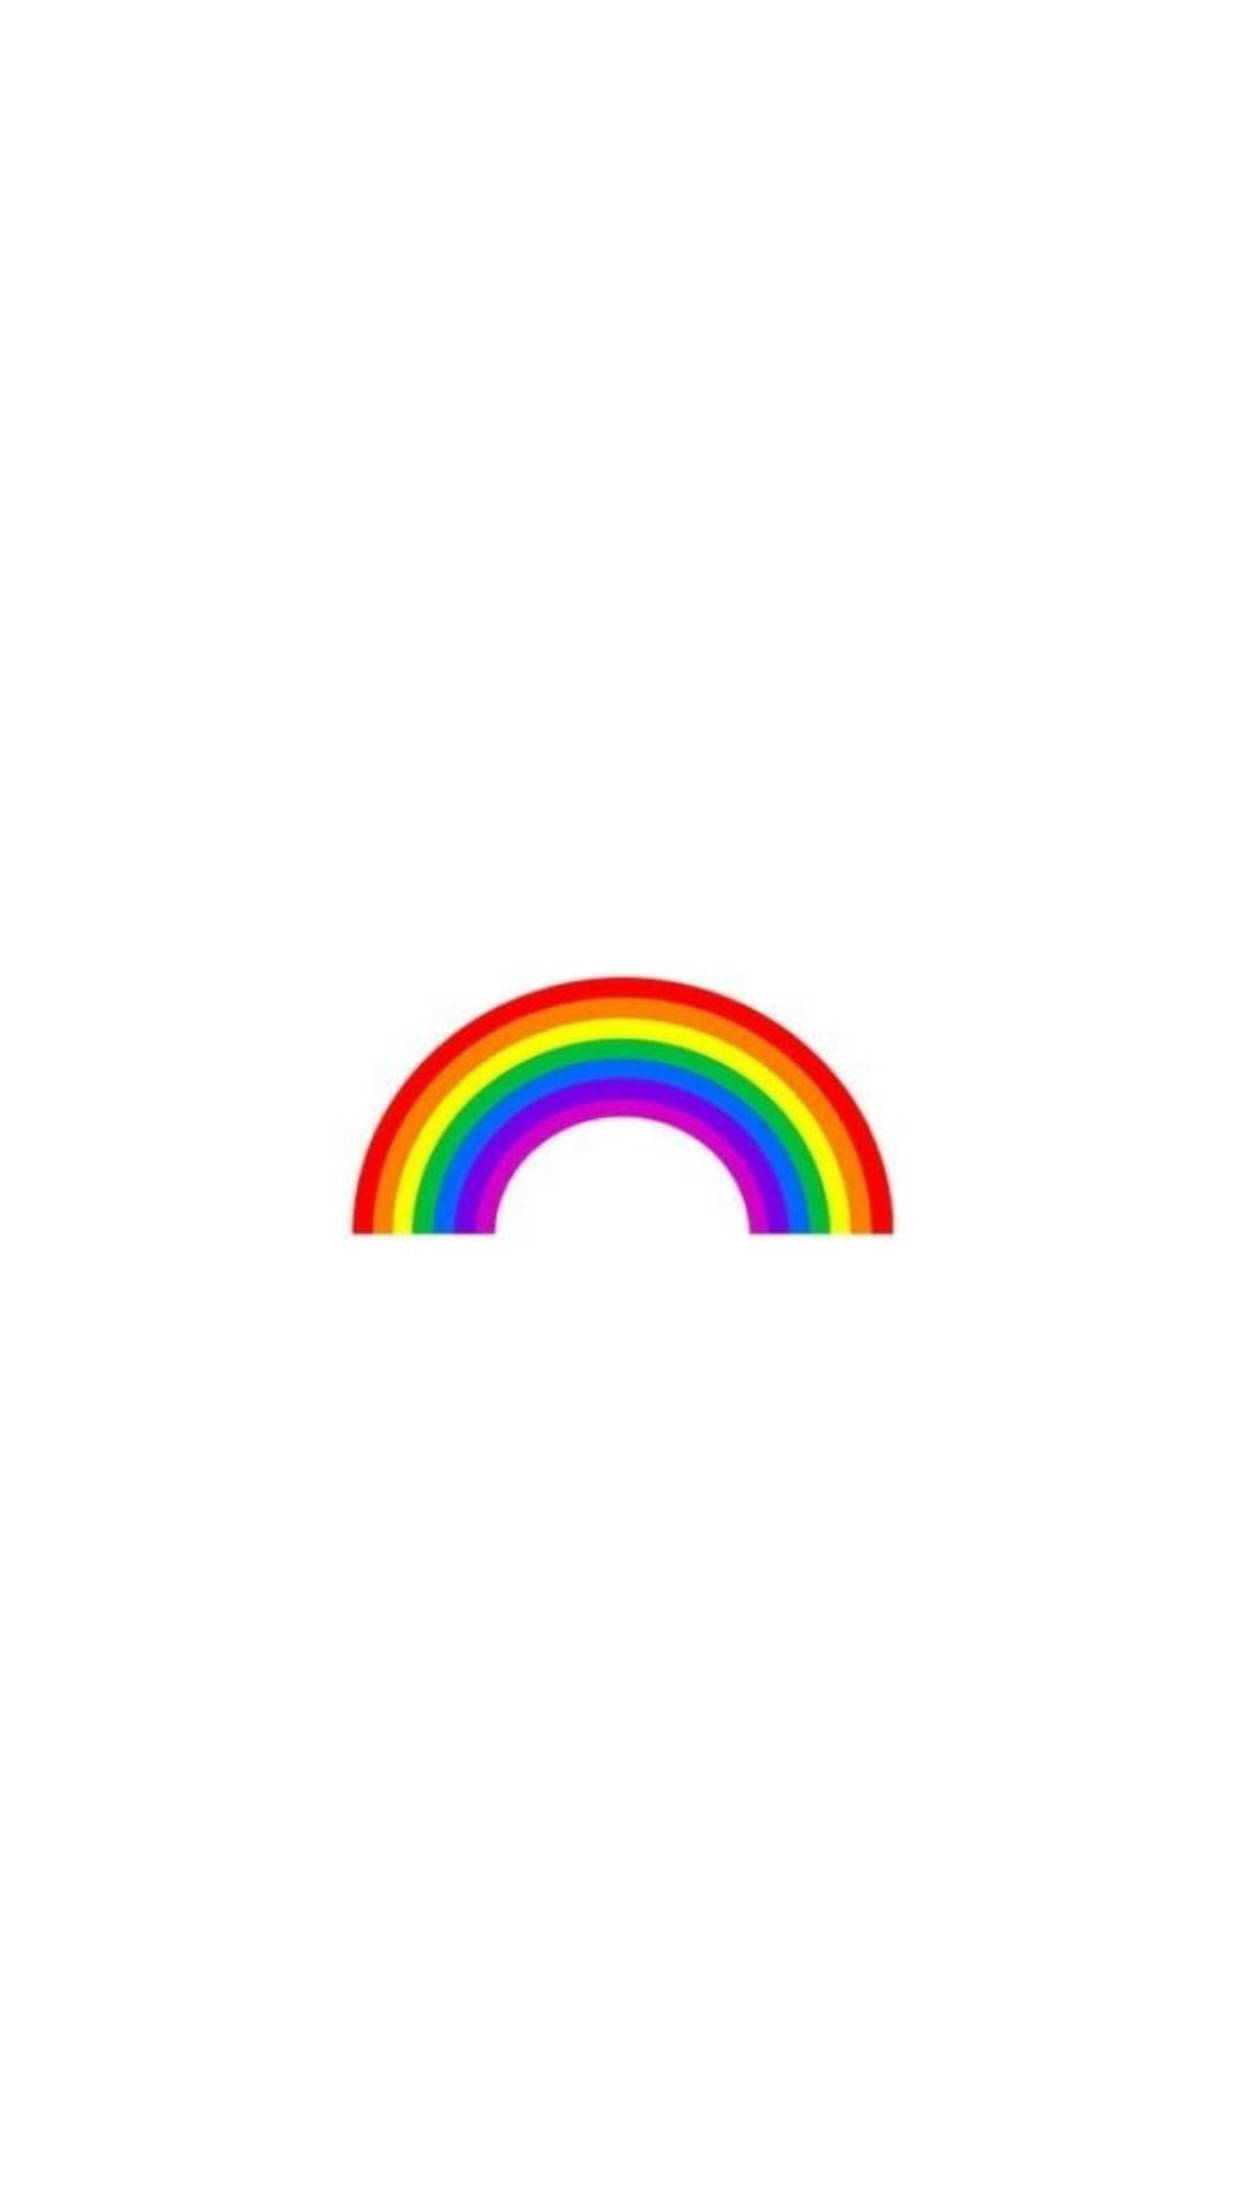 Minimalistic Rainbow Lgbt Phone Wallpaper